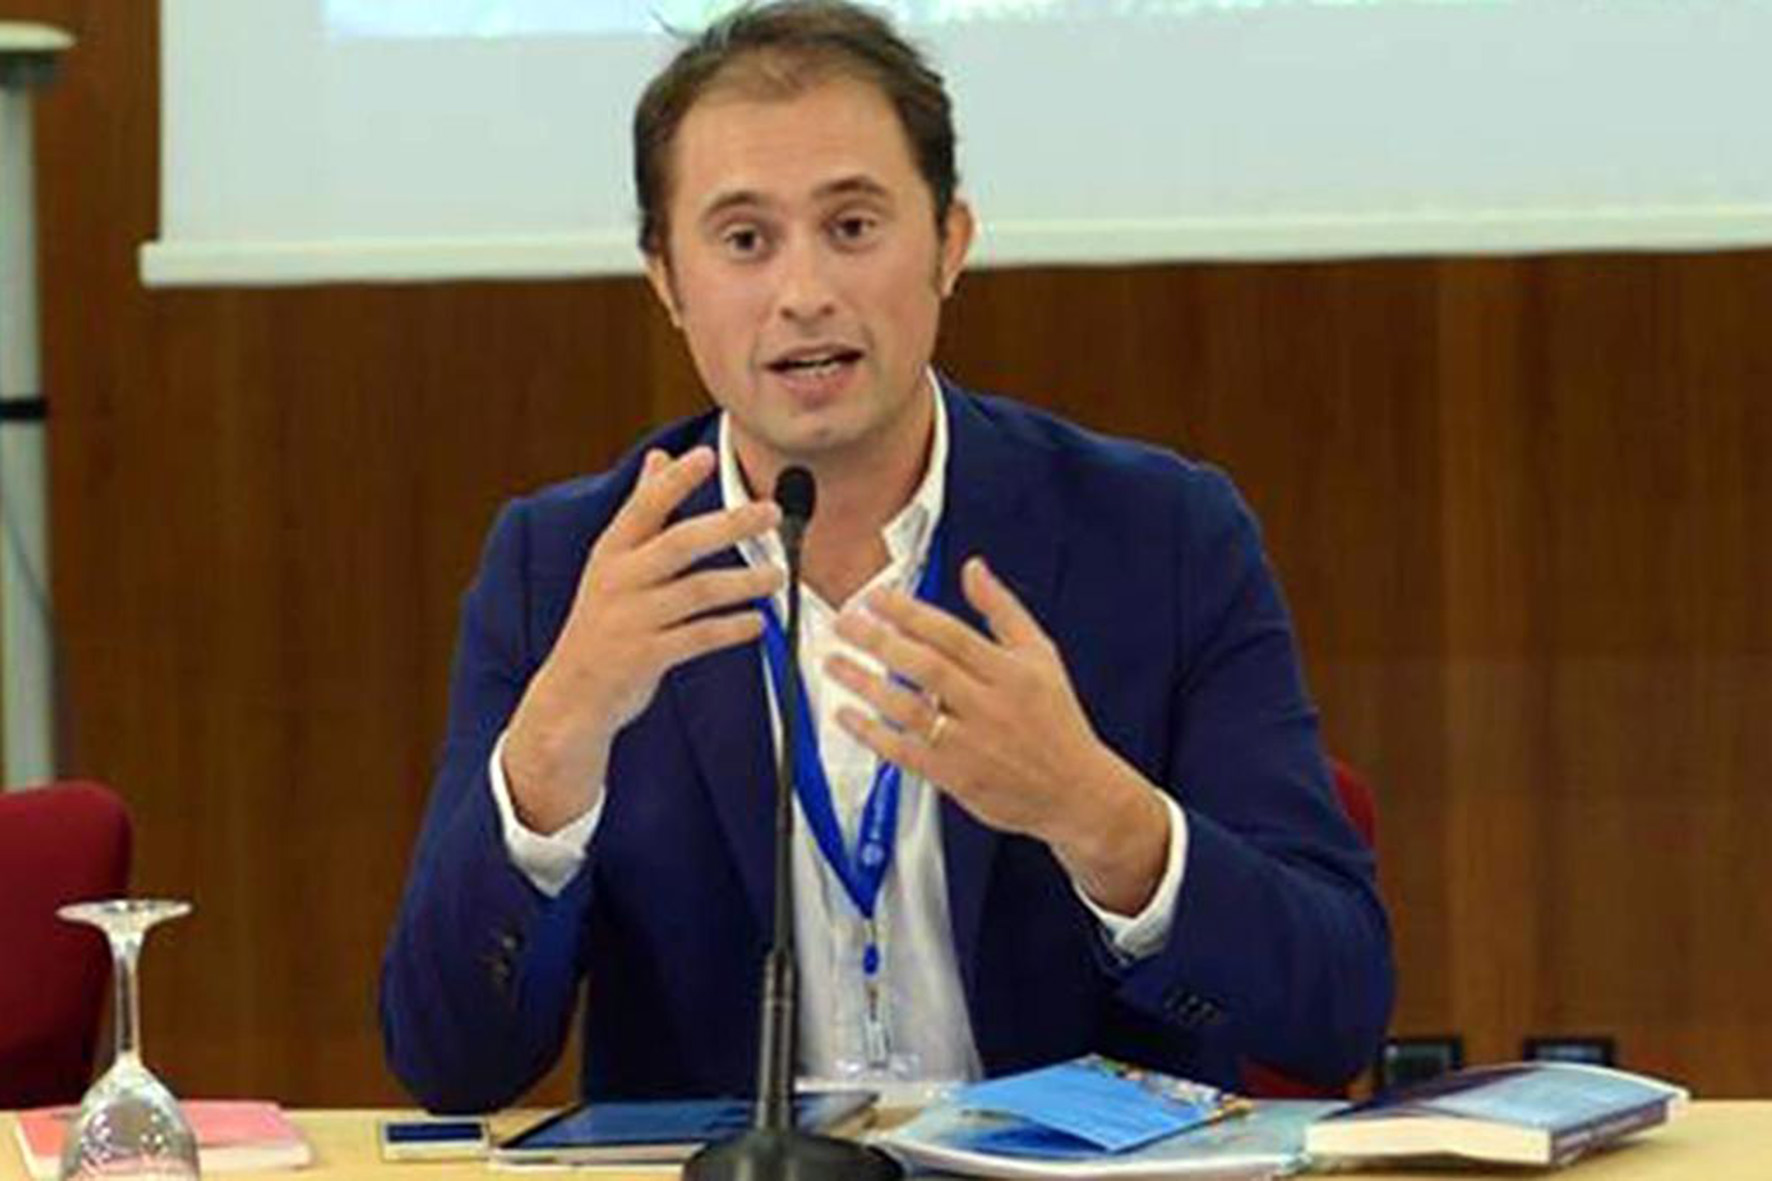 Matteo Bracciali: “Sulla salute ragioniamo in funzione dei cittadini e non degli interessi politici”